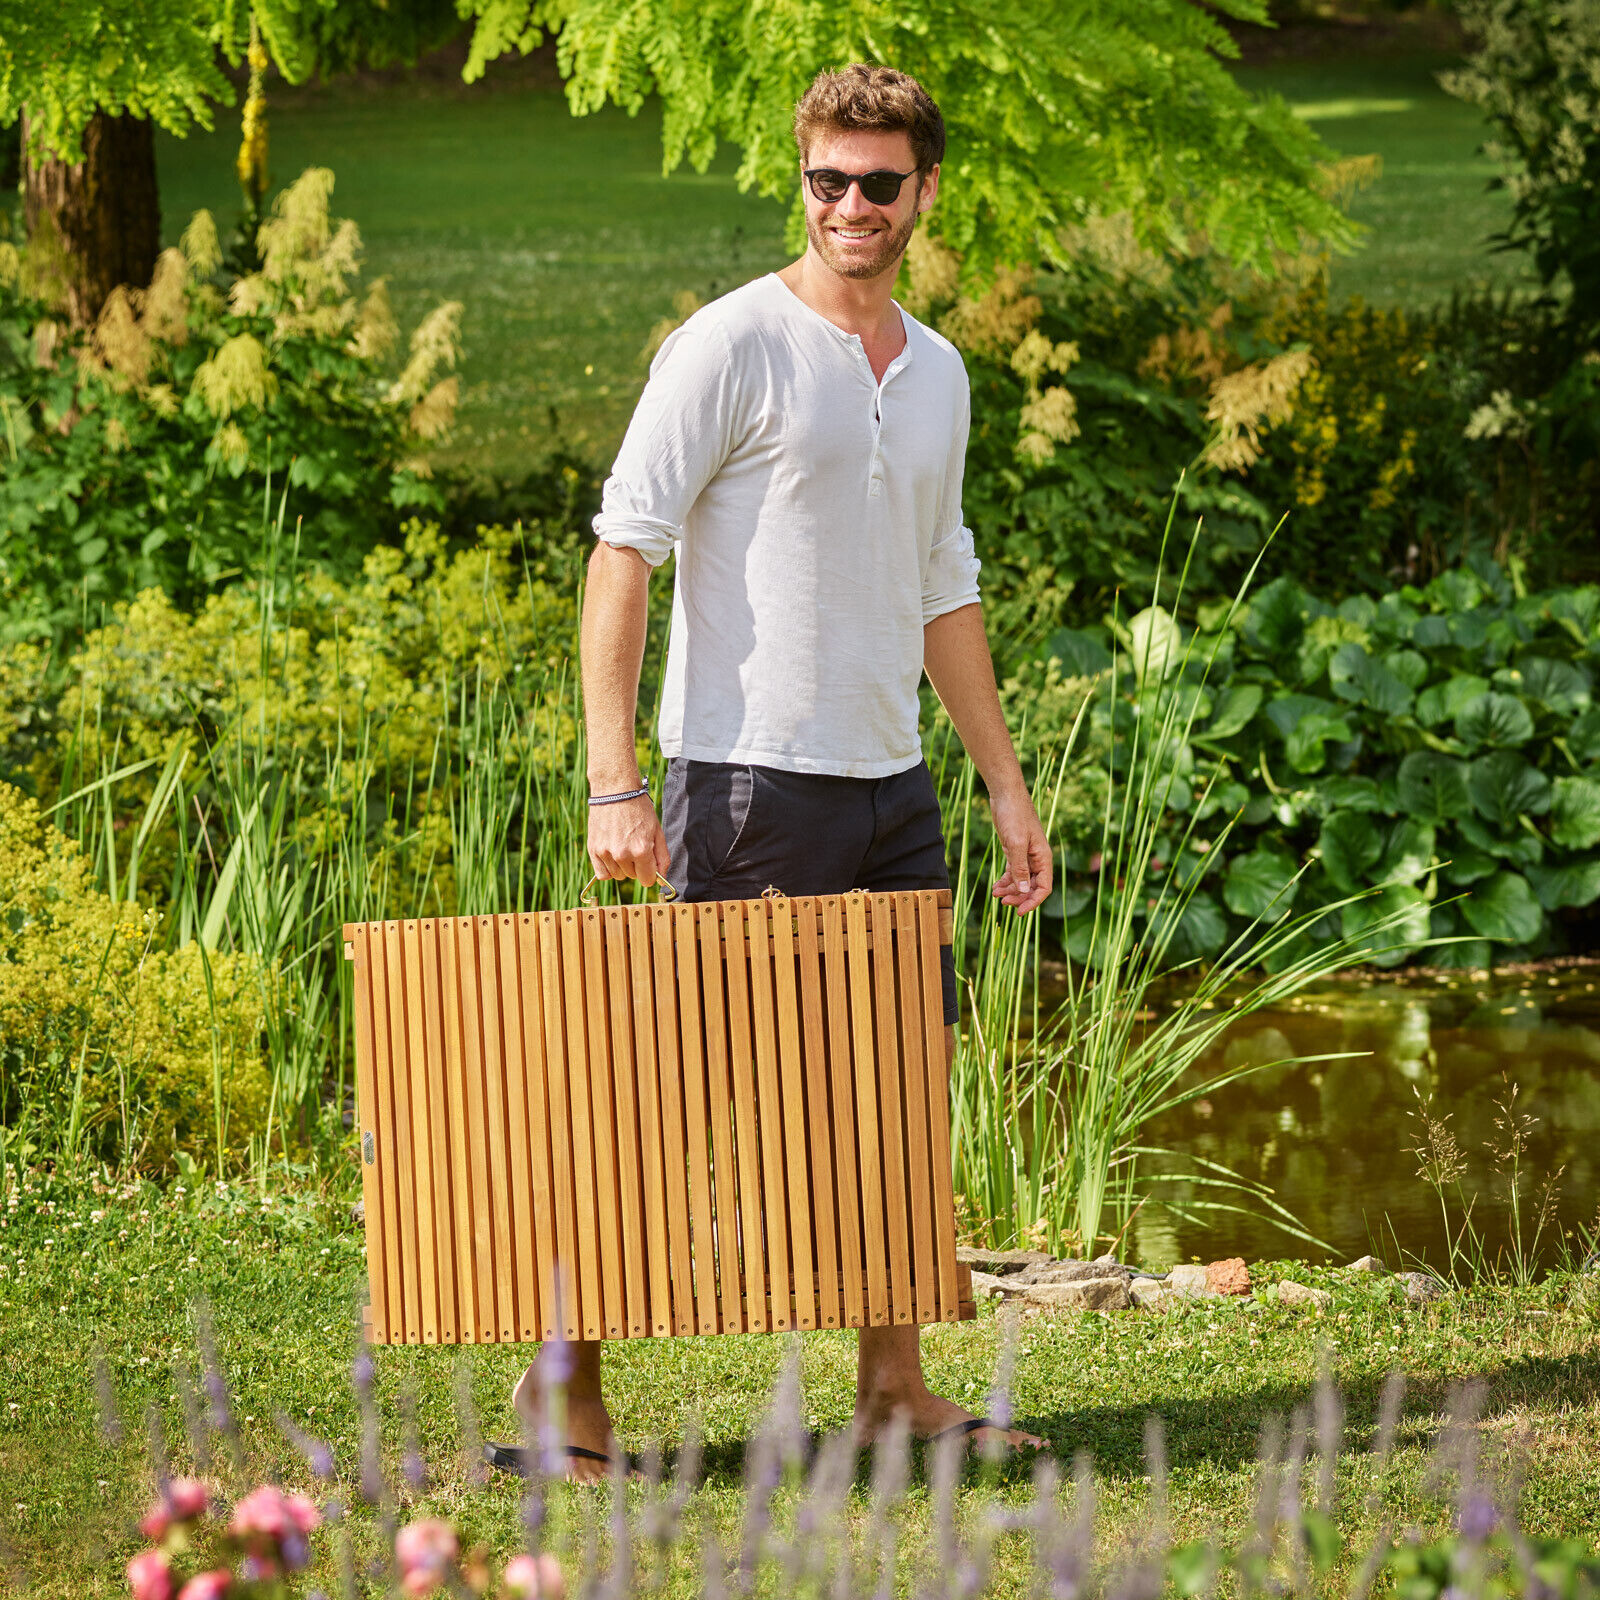 CASARIA Sonnenliege Klappbar Holz Akazie 320kg Belastbarkeit Garten Gartenliege